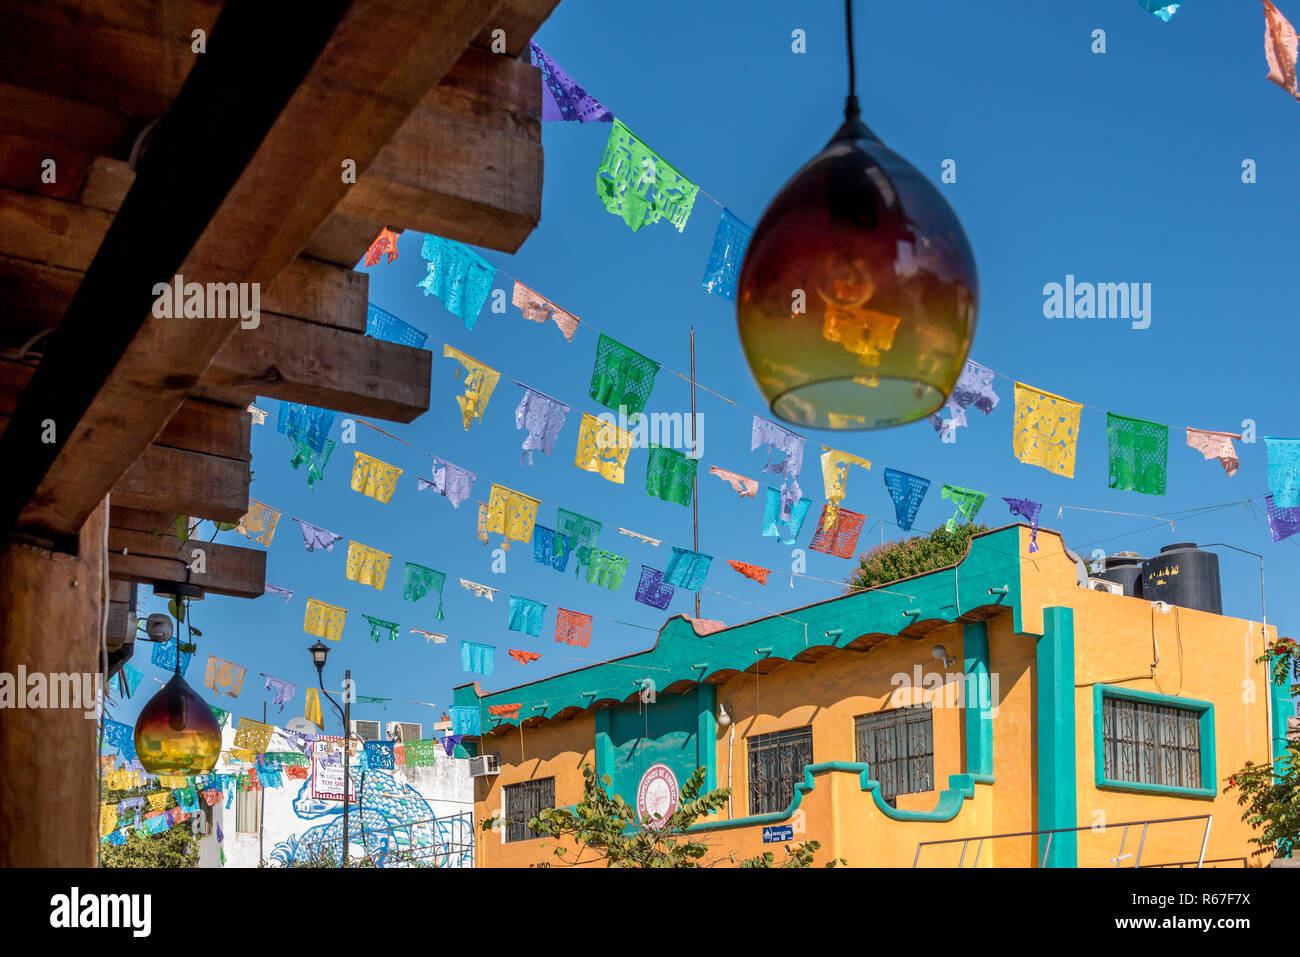 Auf der Suche durch, mundgeblasenem Glas Lampe hängende Outside cafe in Sayulita, Mexiko, mit bunten Papel picado Fahnen auf der anderen Straßenseite. Stockfoto